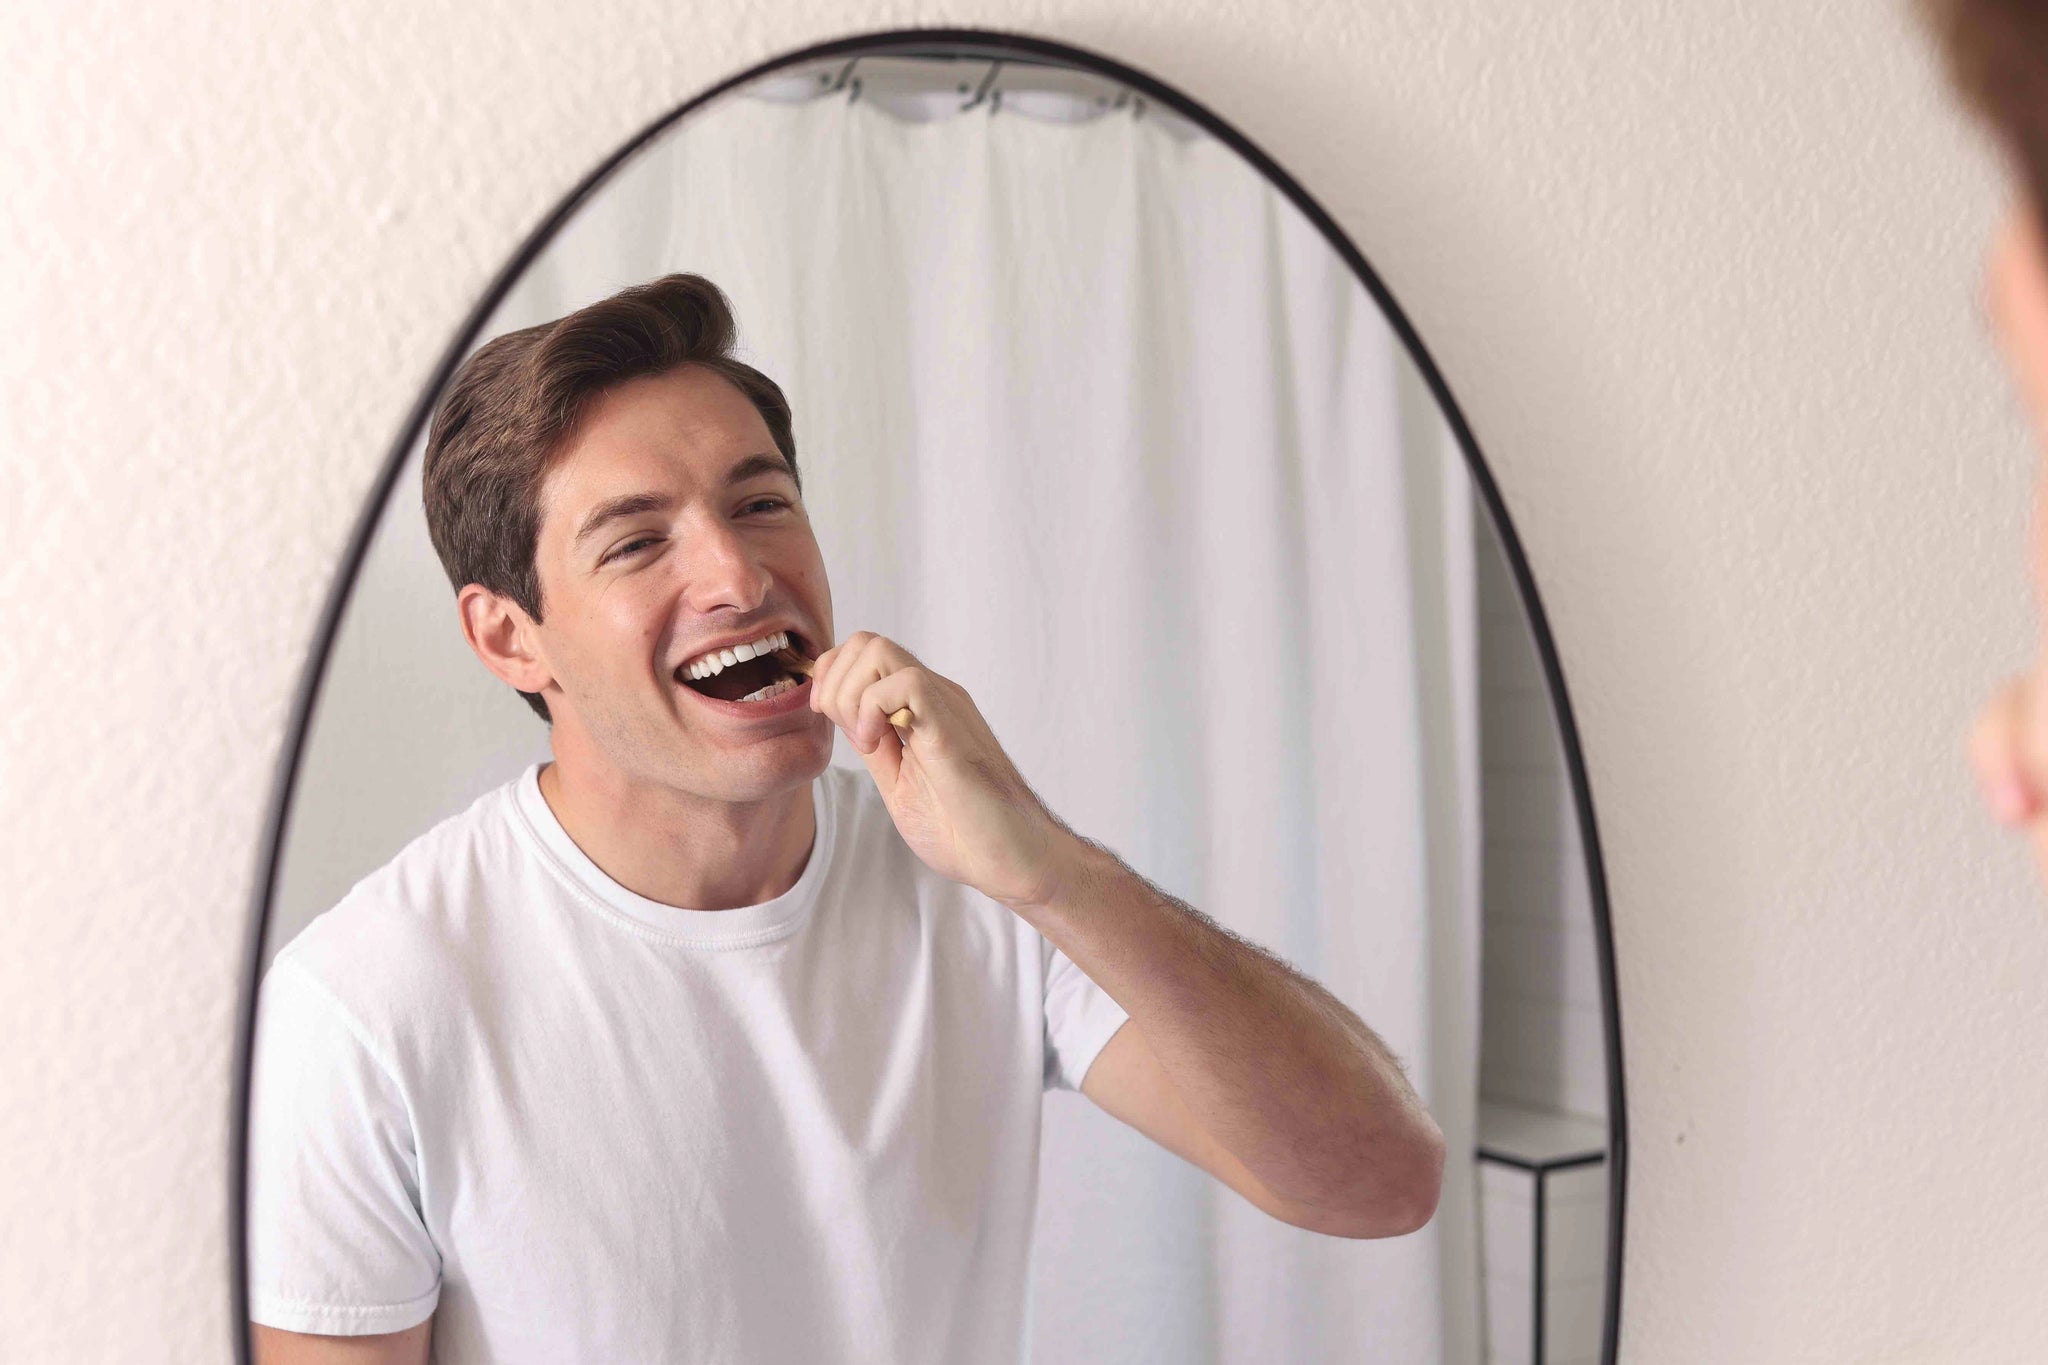 Man brushing teeth with Wonder bamboo toothbrush